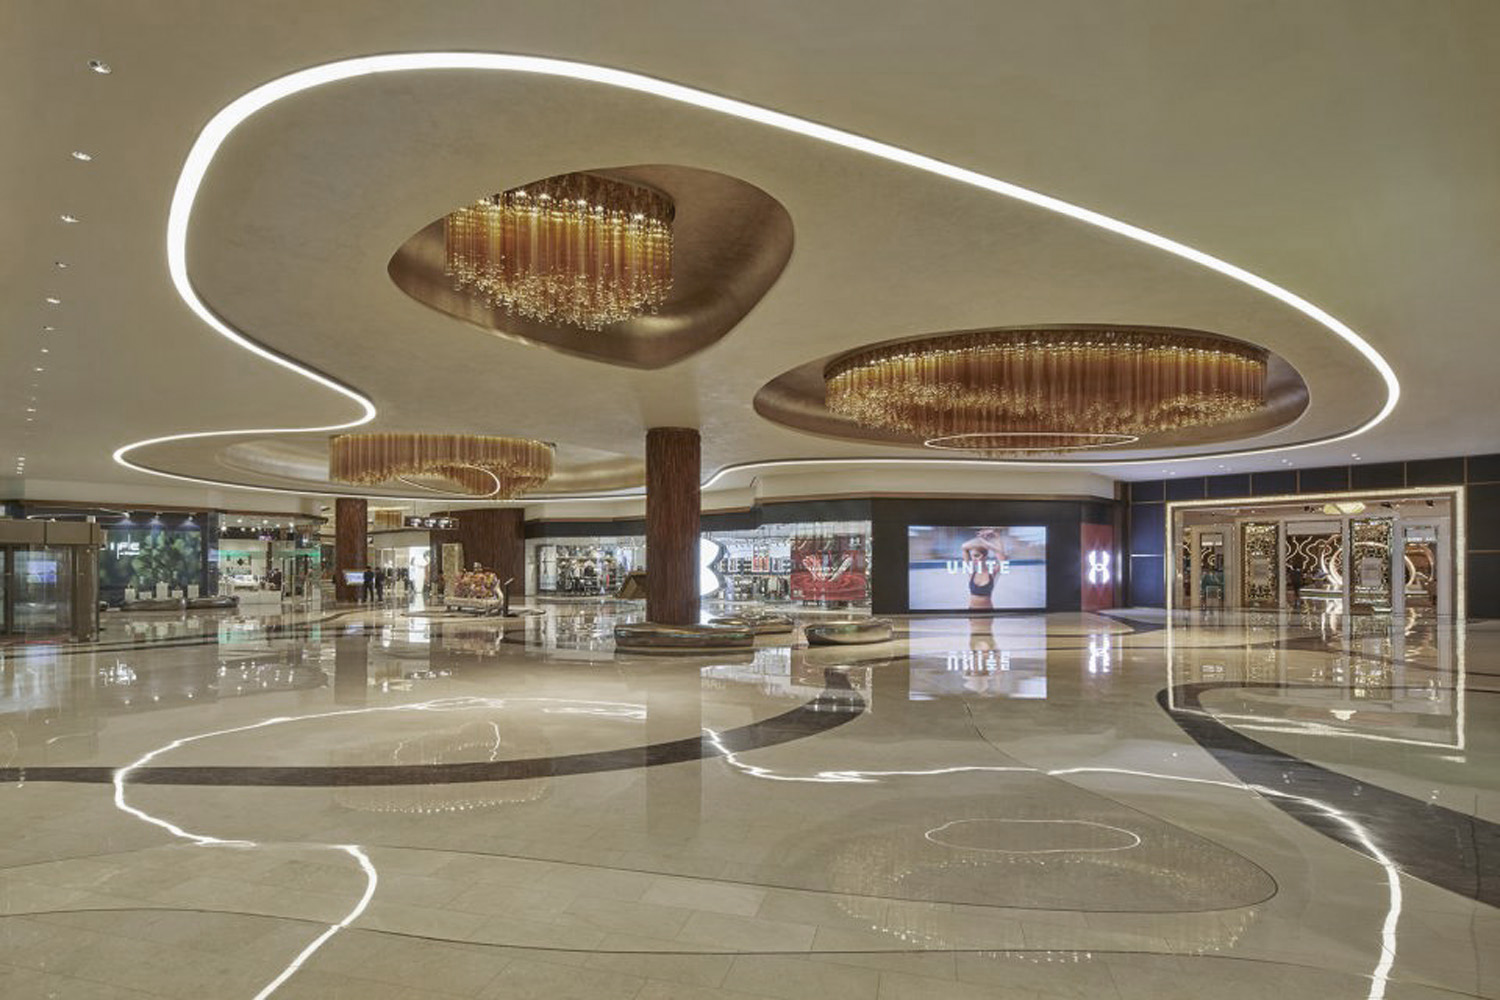 Space design of hotel mall corridor